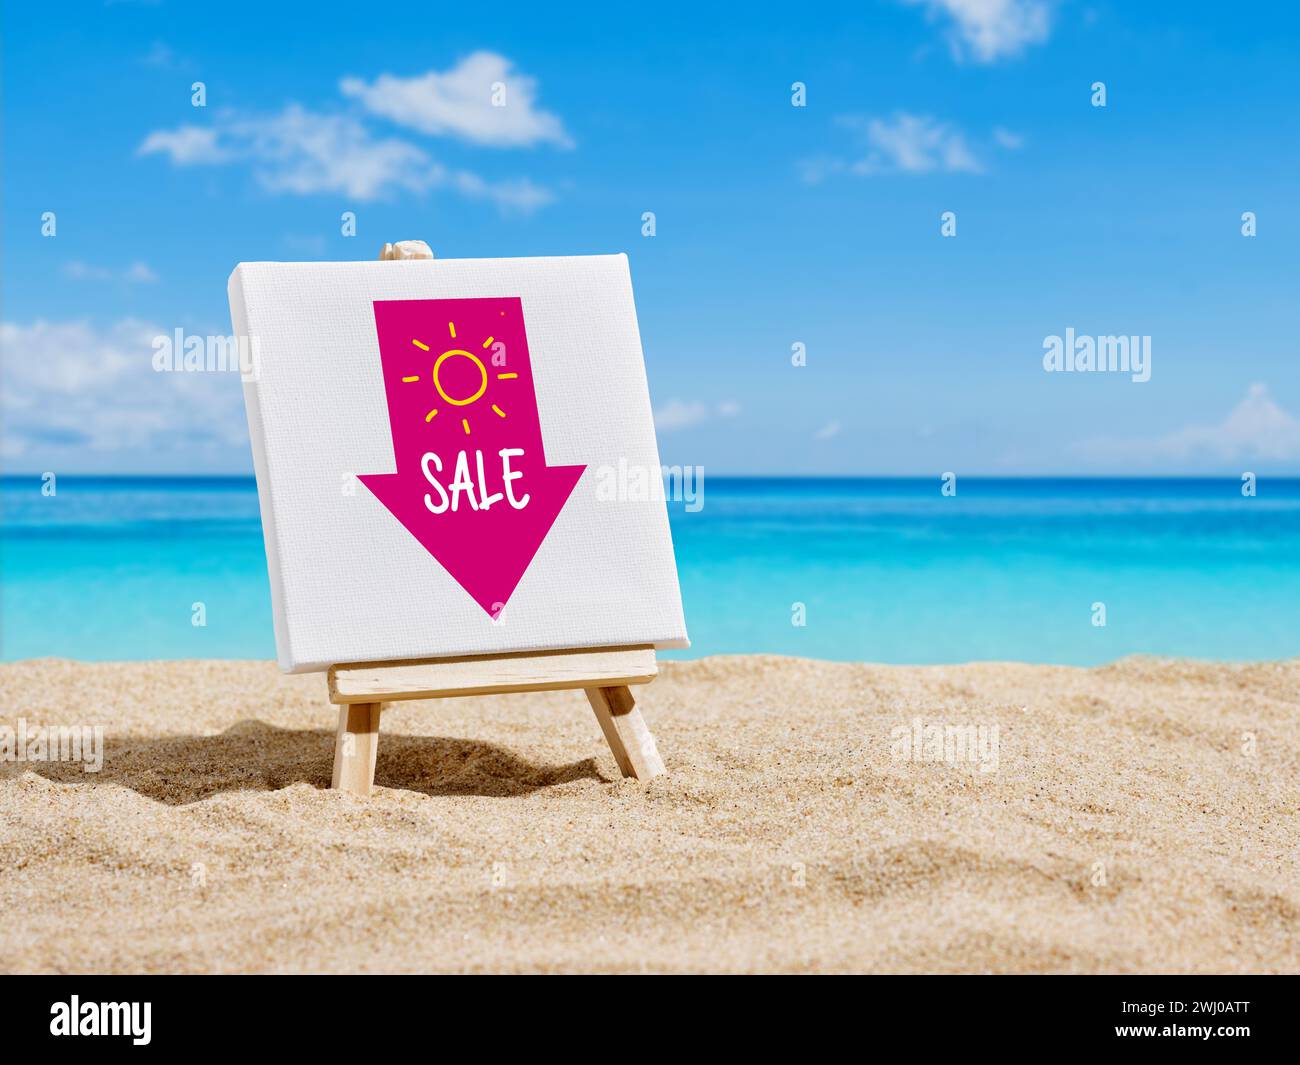 Concept de vente d'été. Une toile sur un chevalet avec une annonce de vente d'été ou une bannière publicitaire sur le sable d'une plage. Banque D'Images